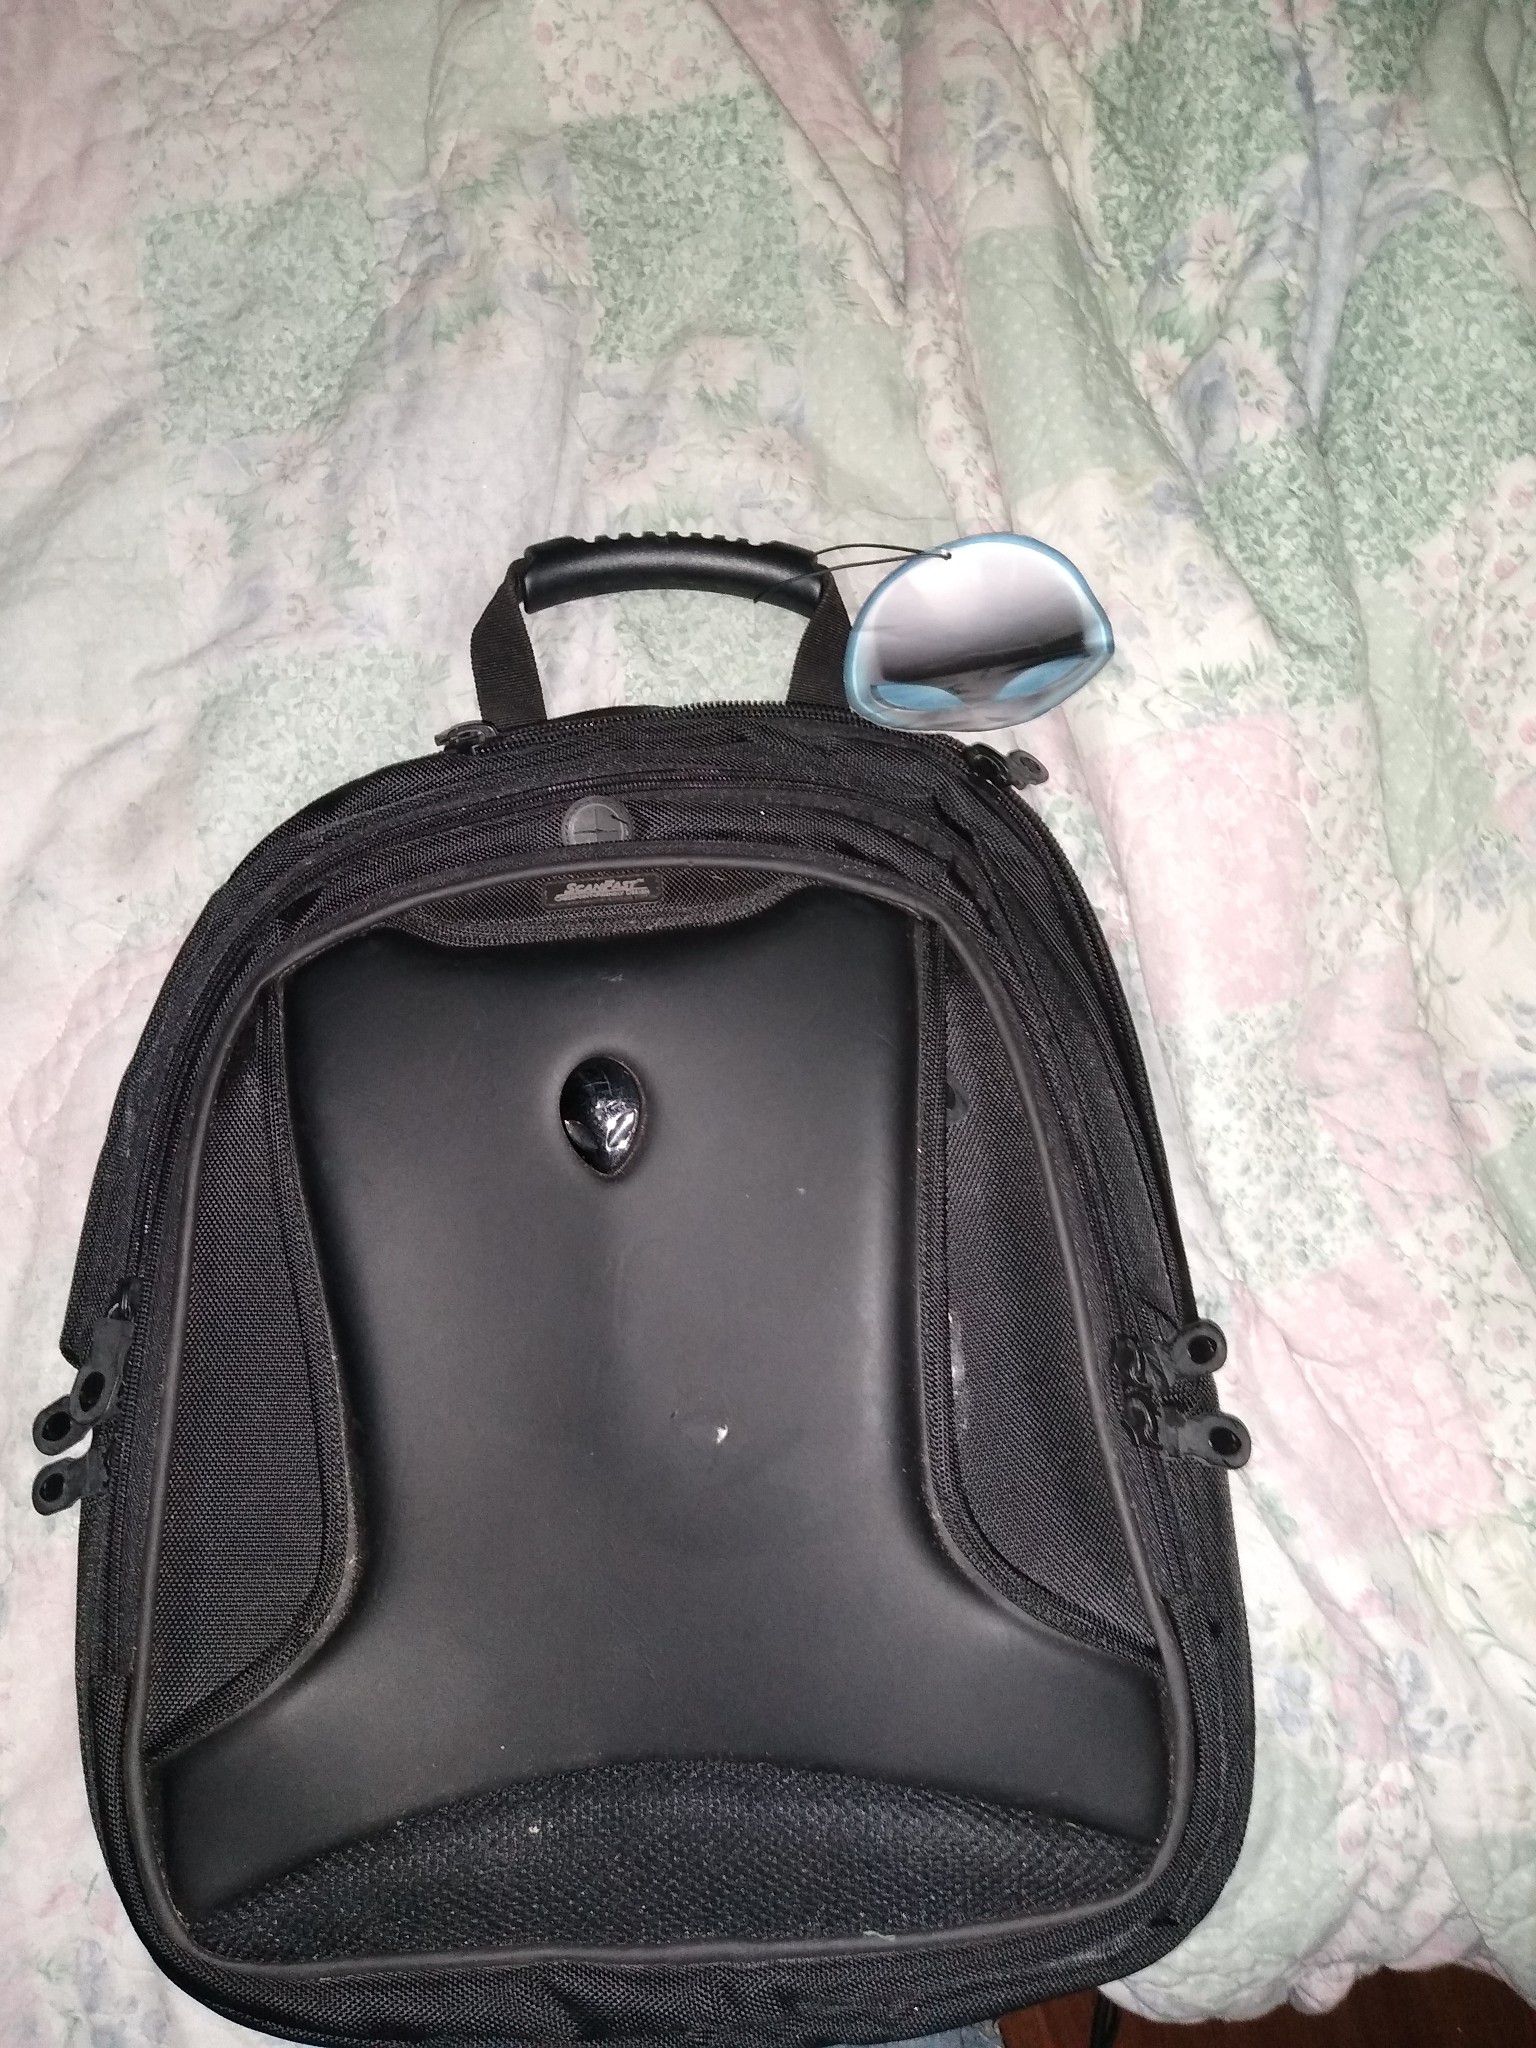 Alienware laptop backpack